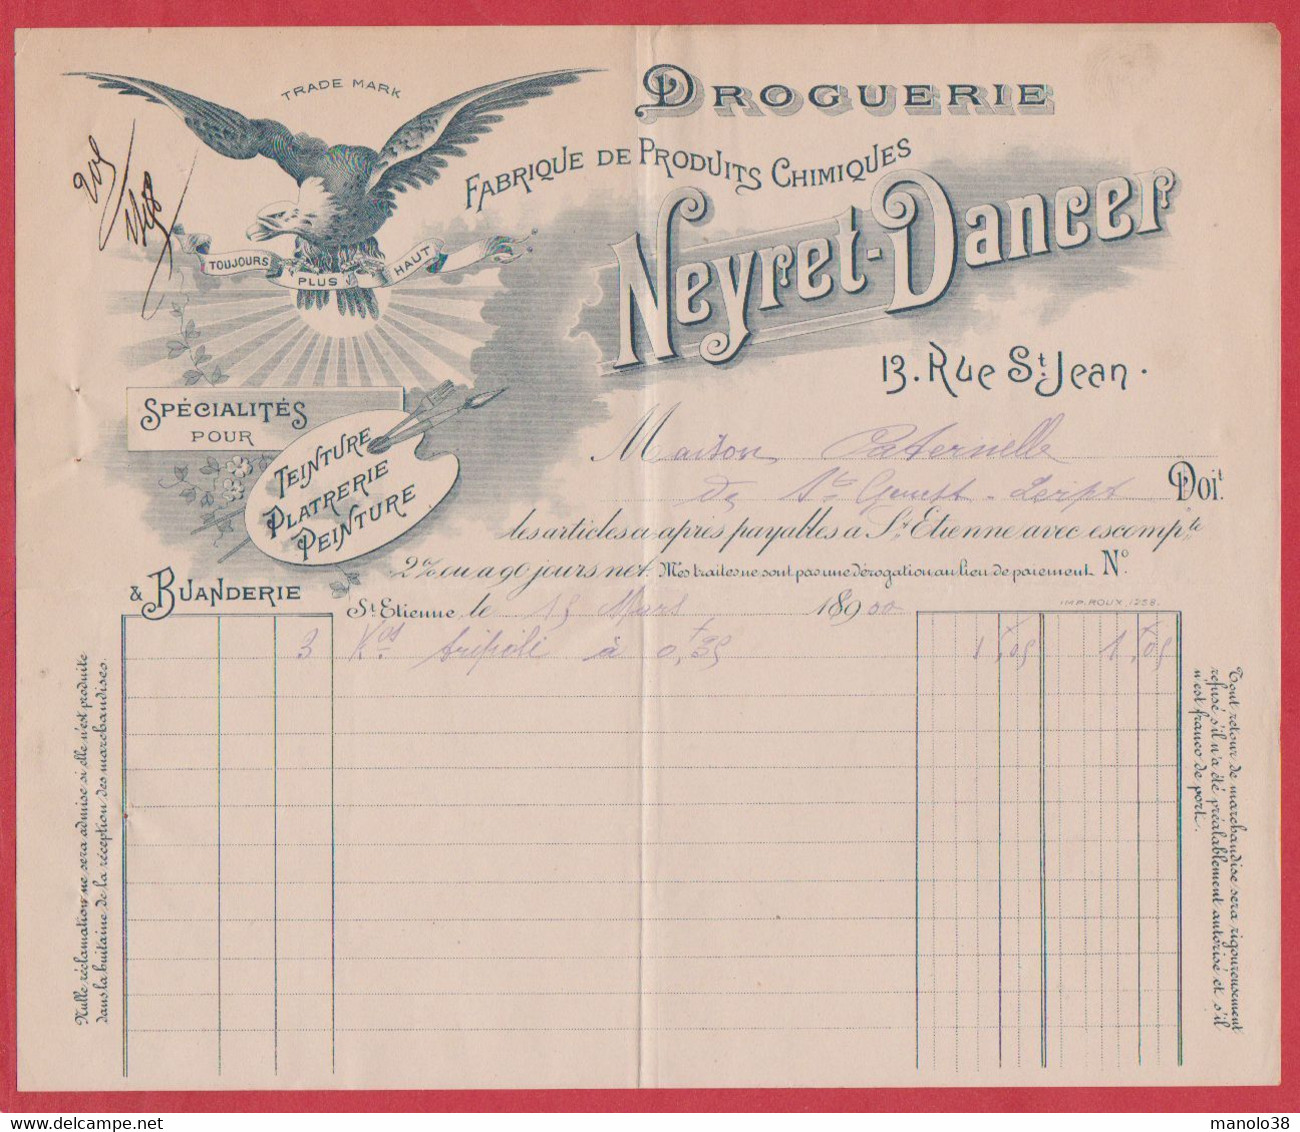 Neyret Dancer. Droguerie. Fabrique De Produits Chimiques. Saint Etienne. Loire (42). Visuel : Aigle. 1900. - Droguerie & Parfumerie